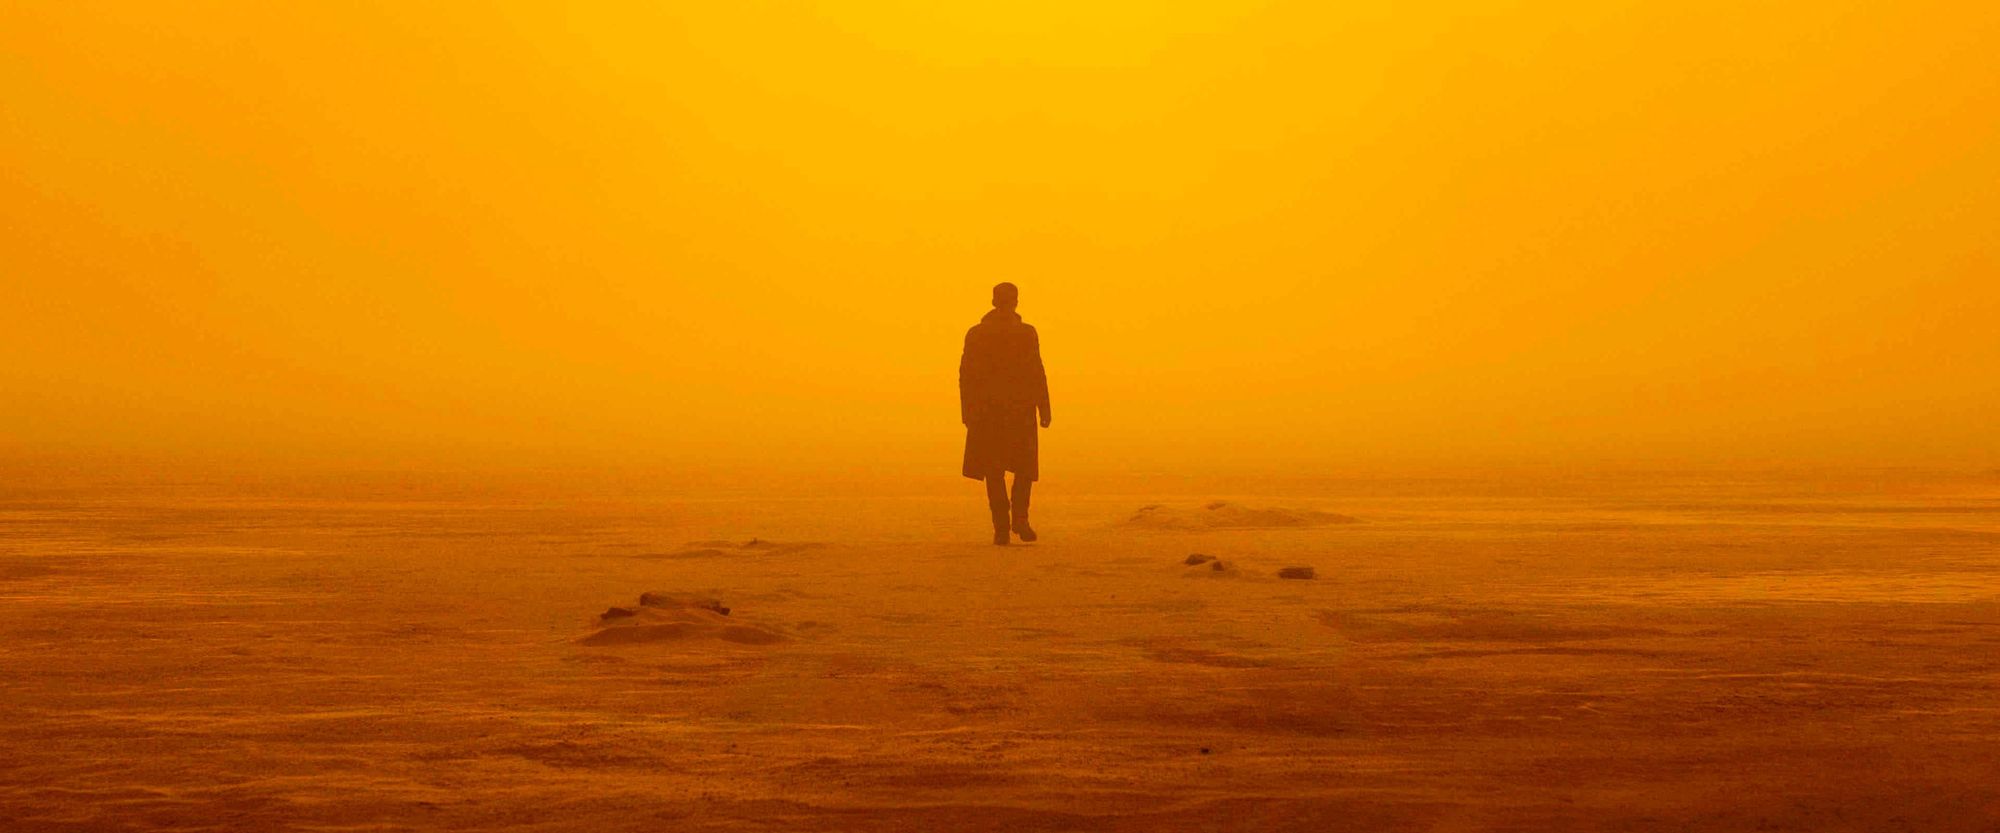 Man walking solitary in the desert